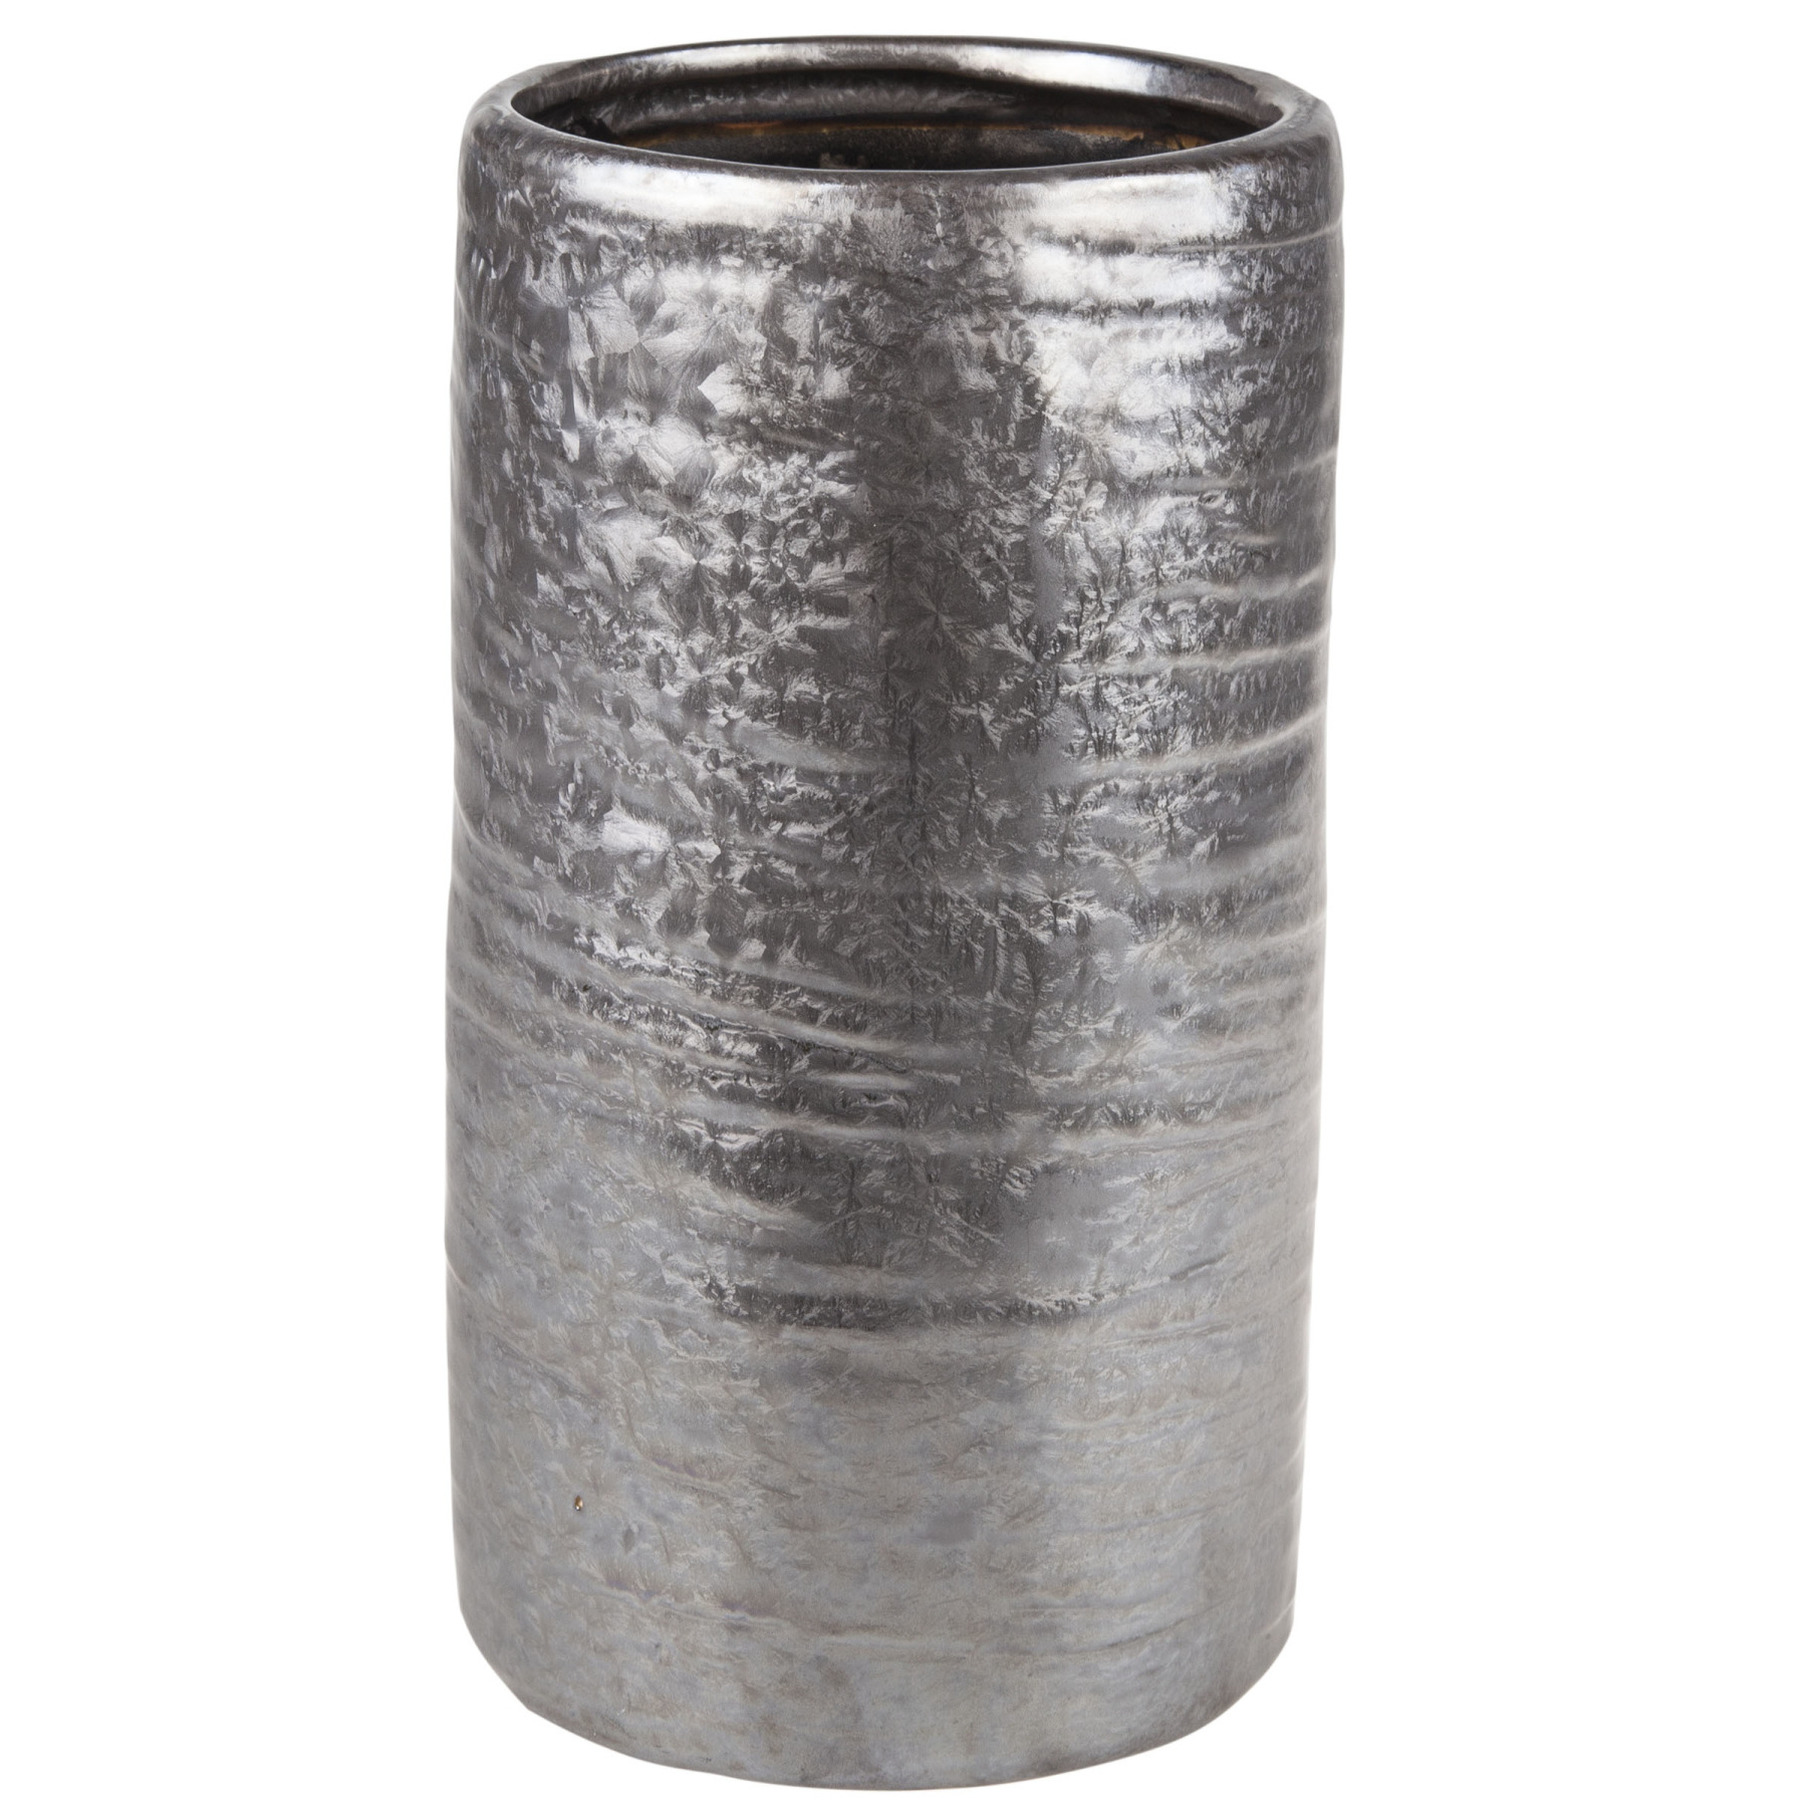 Cilinder vaas keramiek zilver-grijs 12 x 22 cm